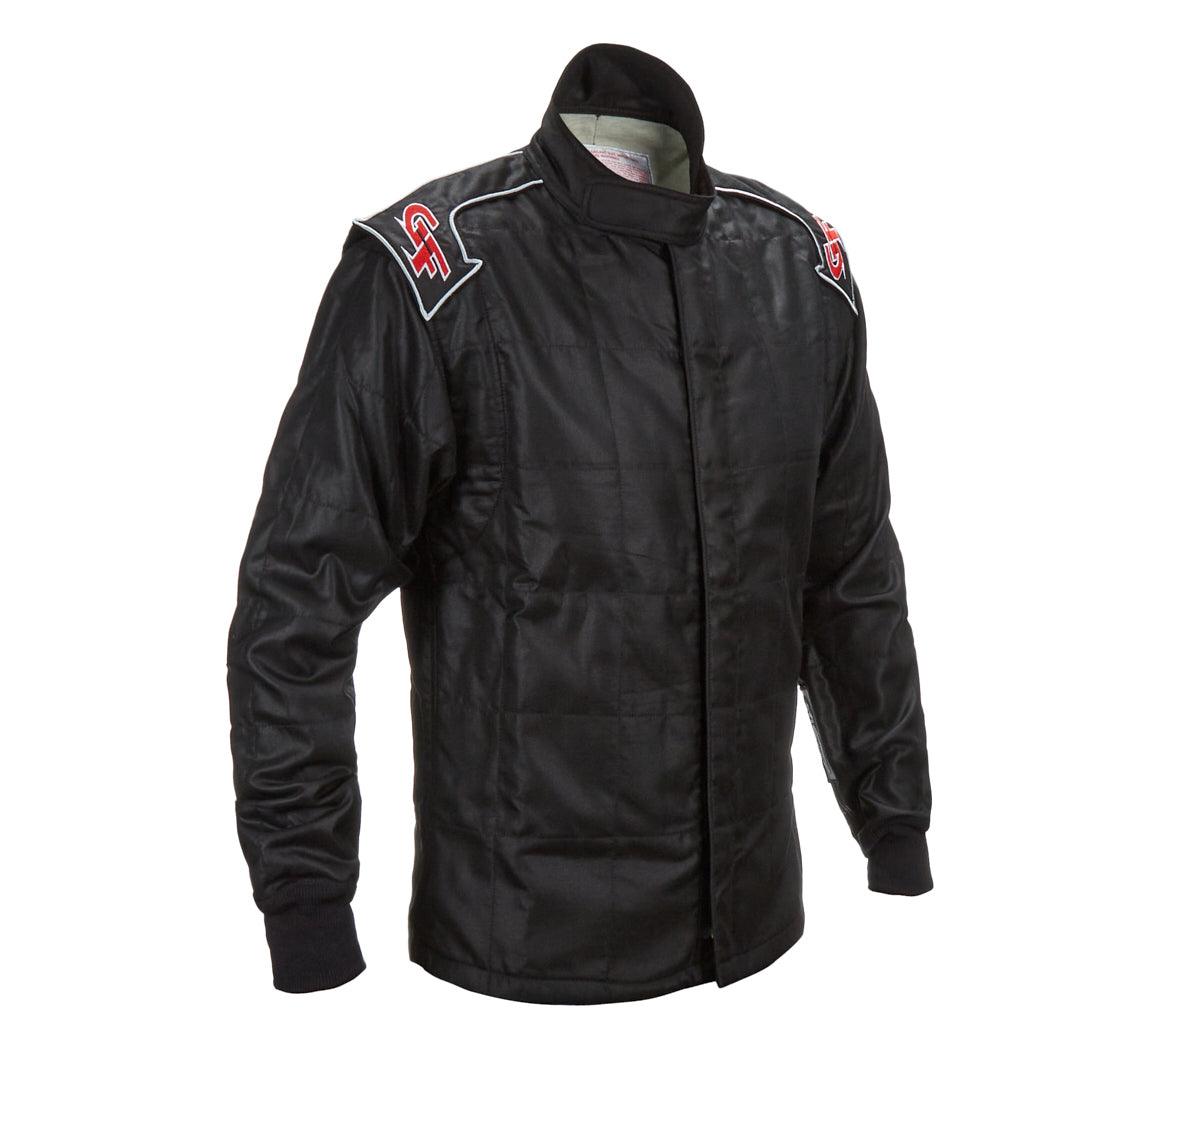 Jacket G-Limit Medium Black SFI-5 - Burlile Performance Products